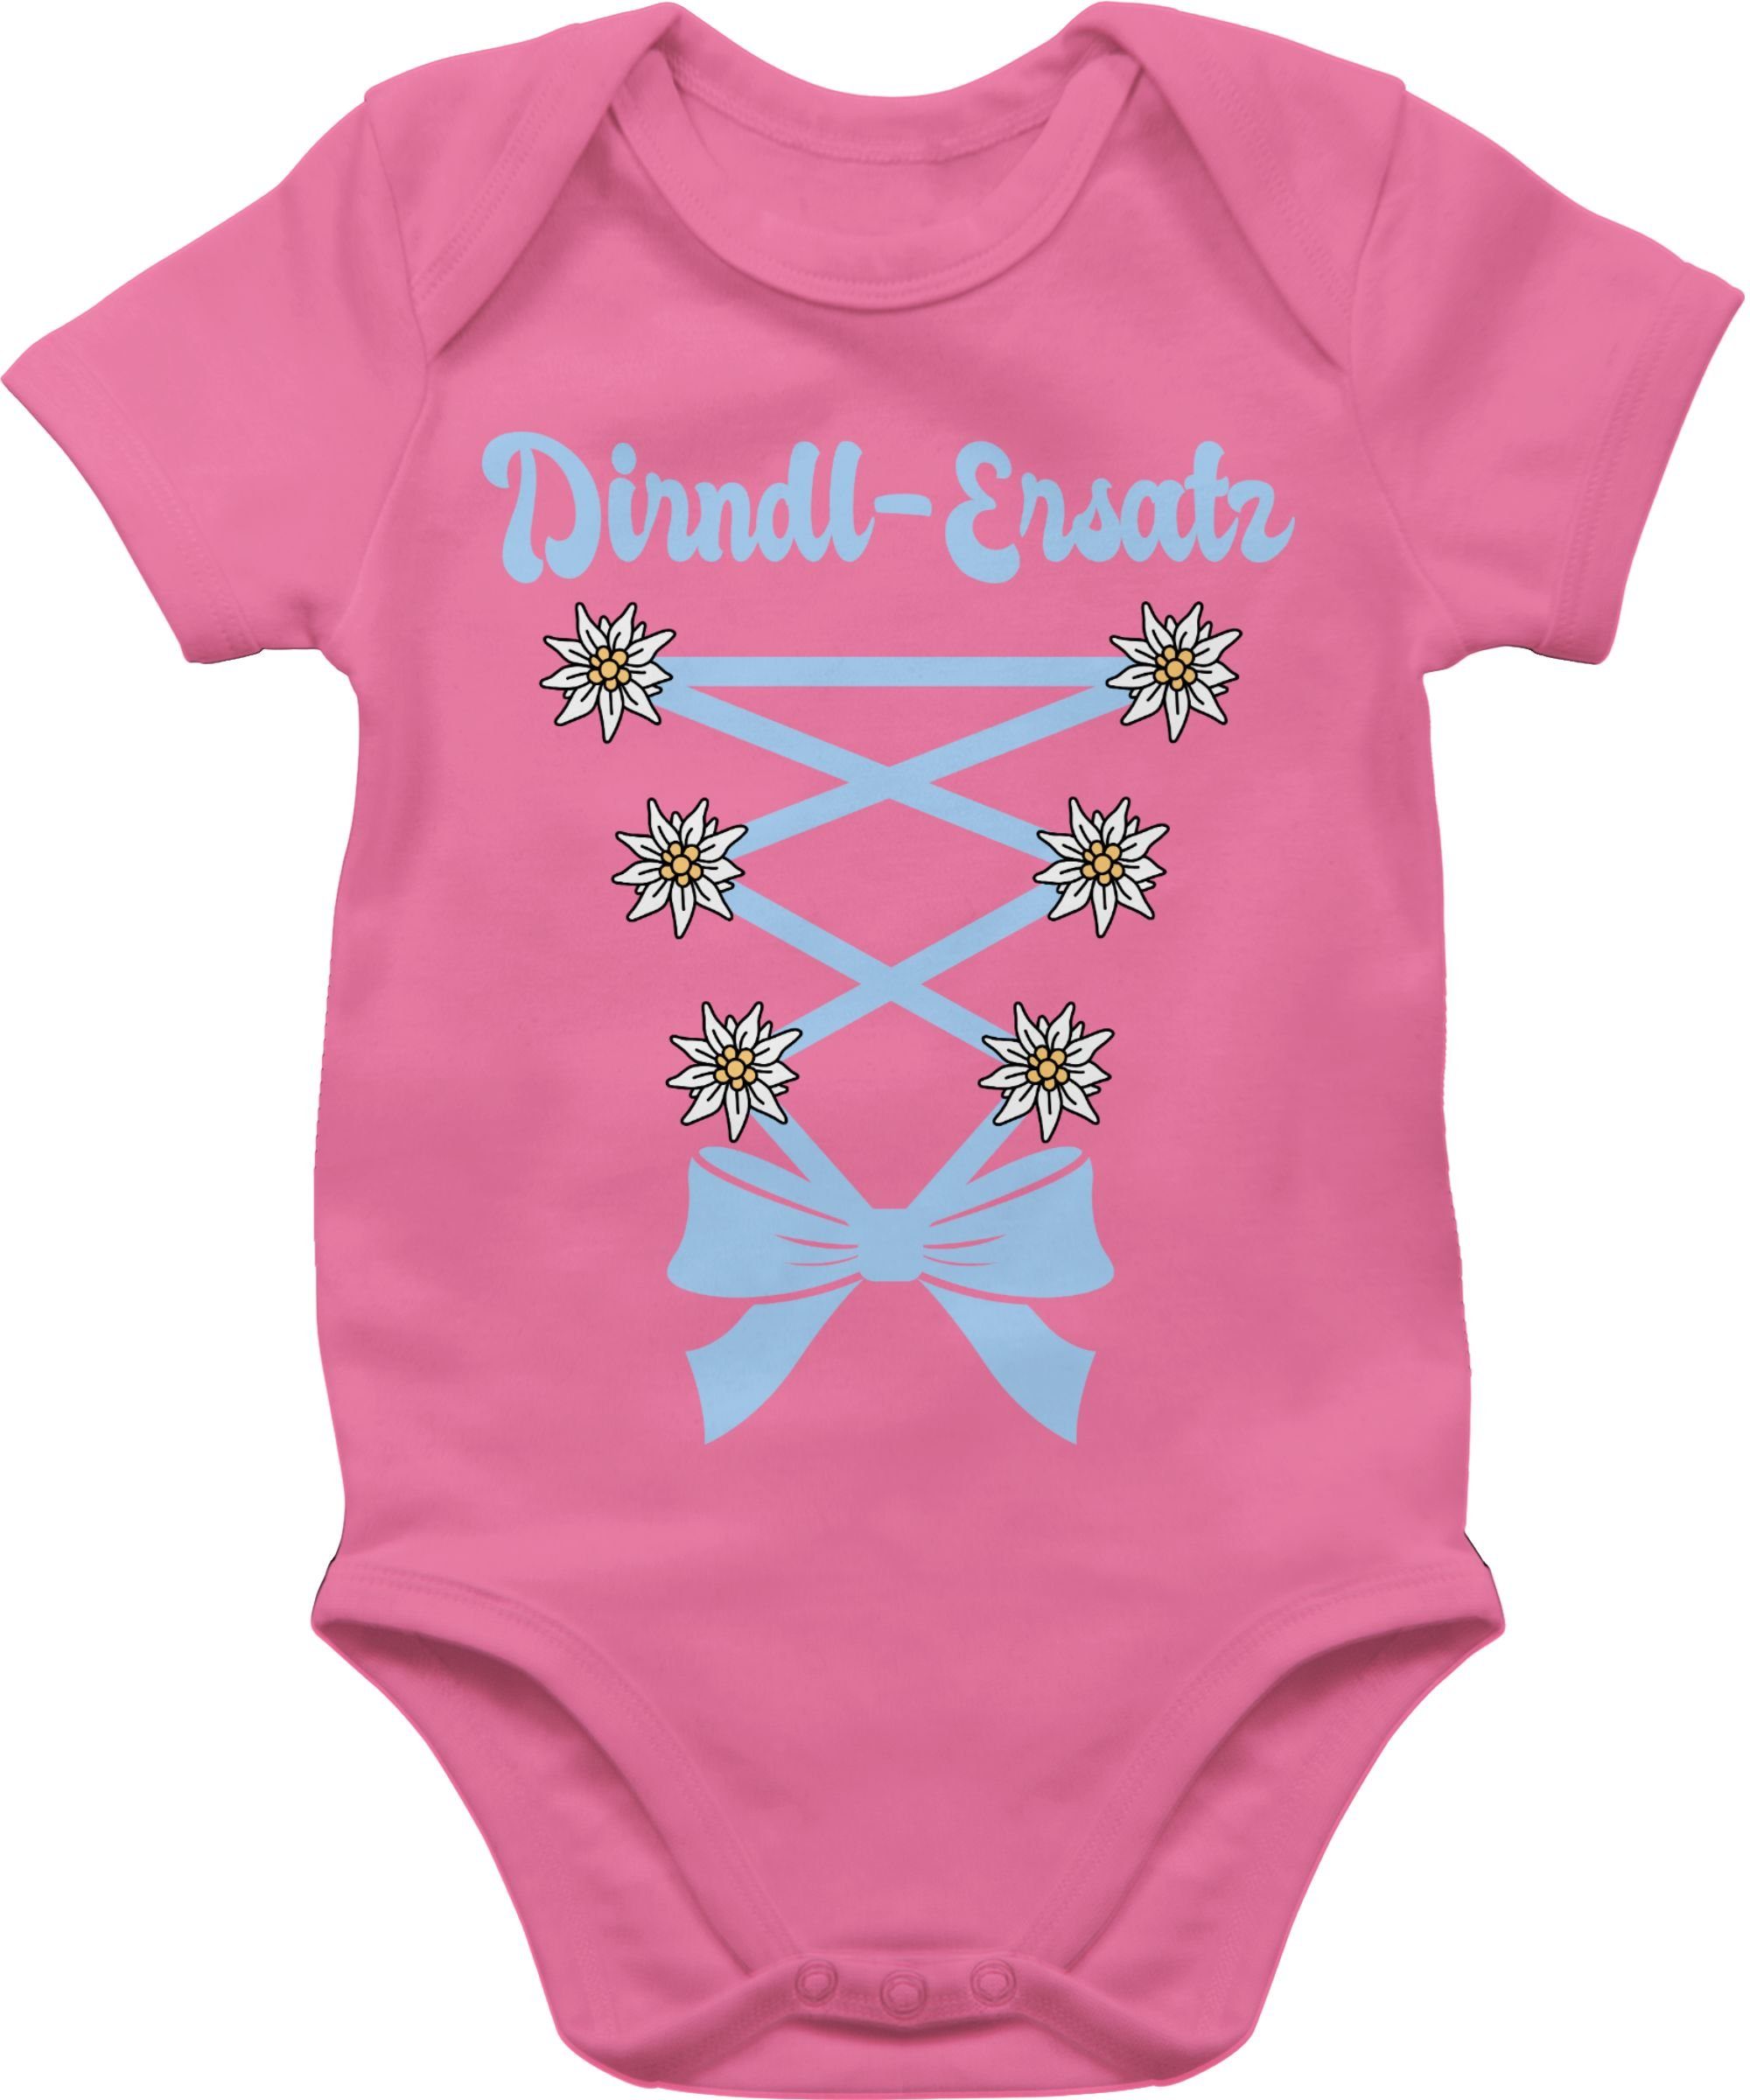 Shirtracer Shirtbody Dirndl Ersatz Korsage Mode für Oktoberfest Baby Outfit 1 Pink